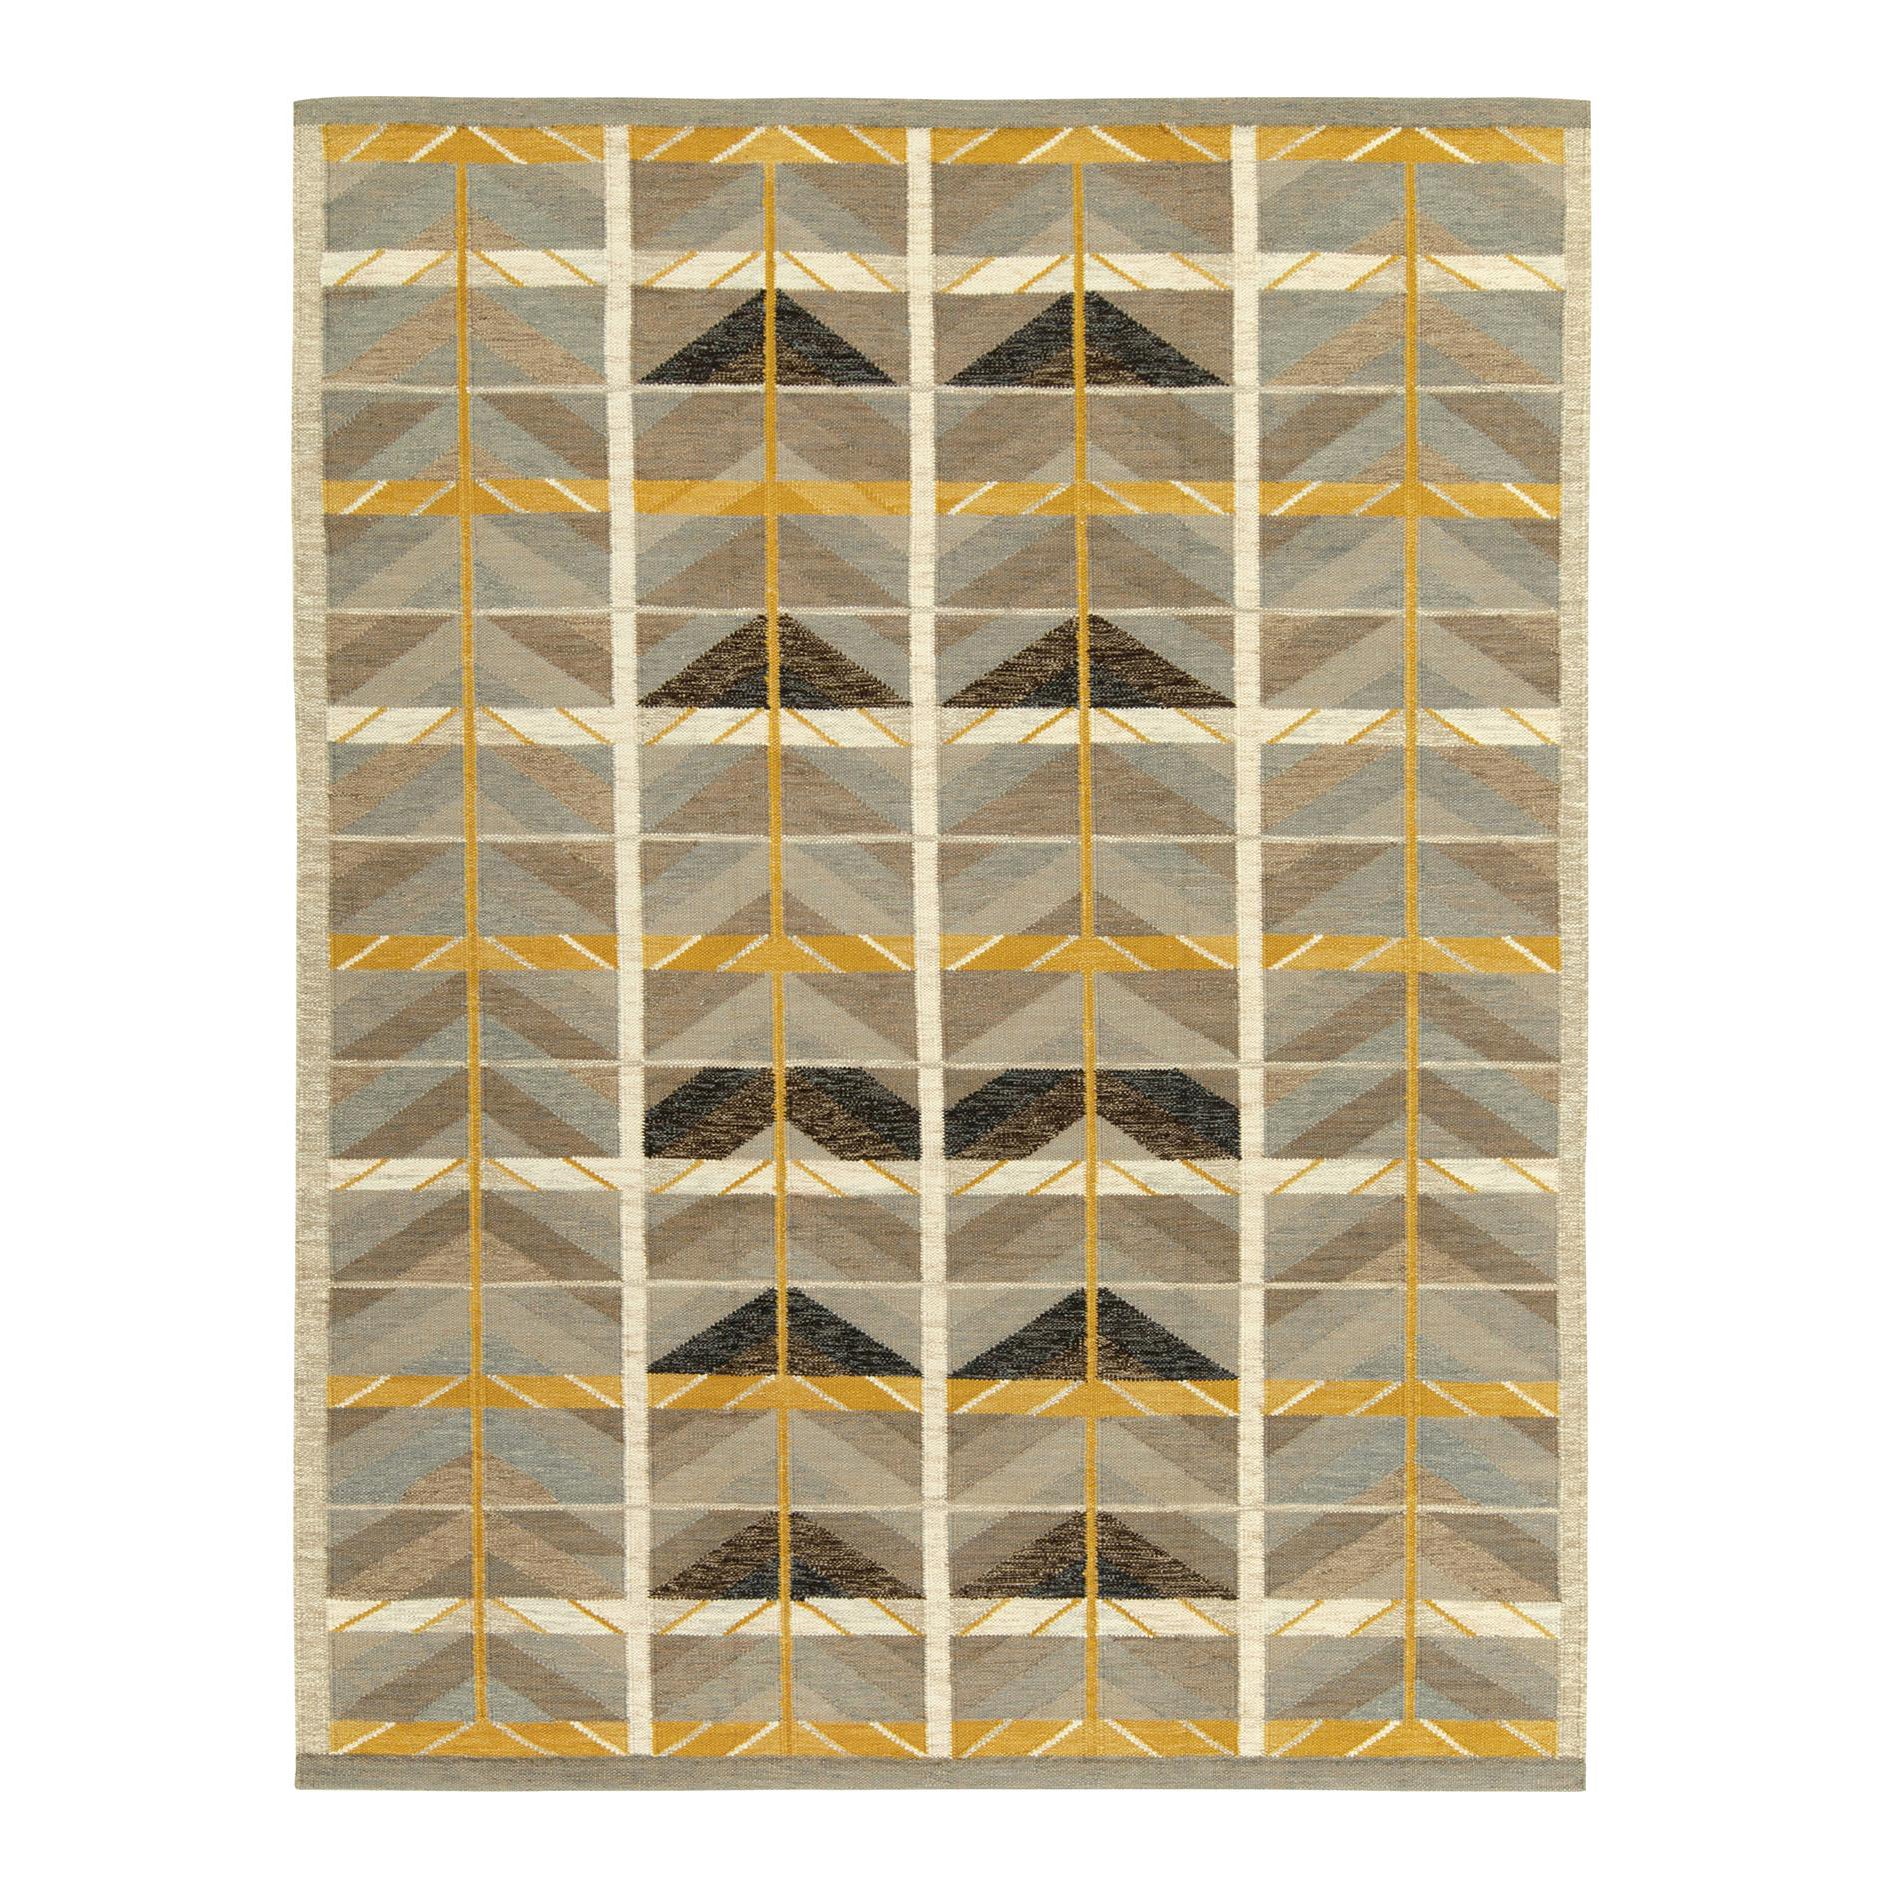 Rug & Kilim's Scandinavian Style Custom Kilim in Beige-Brown Geometric Pattern